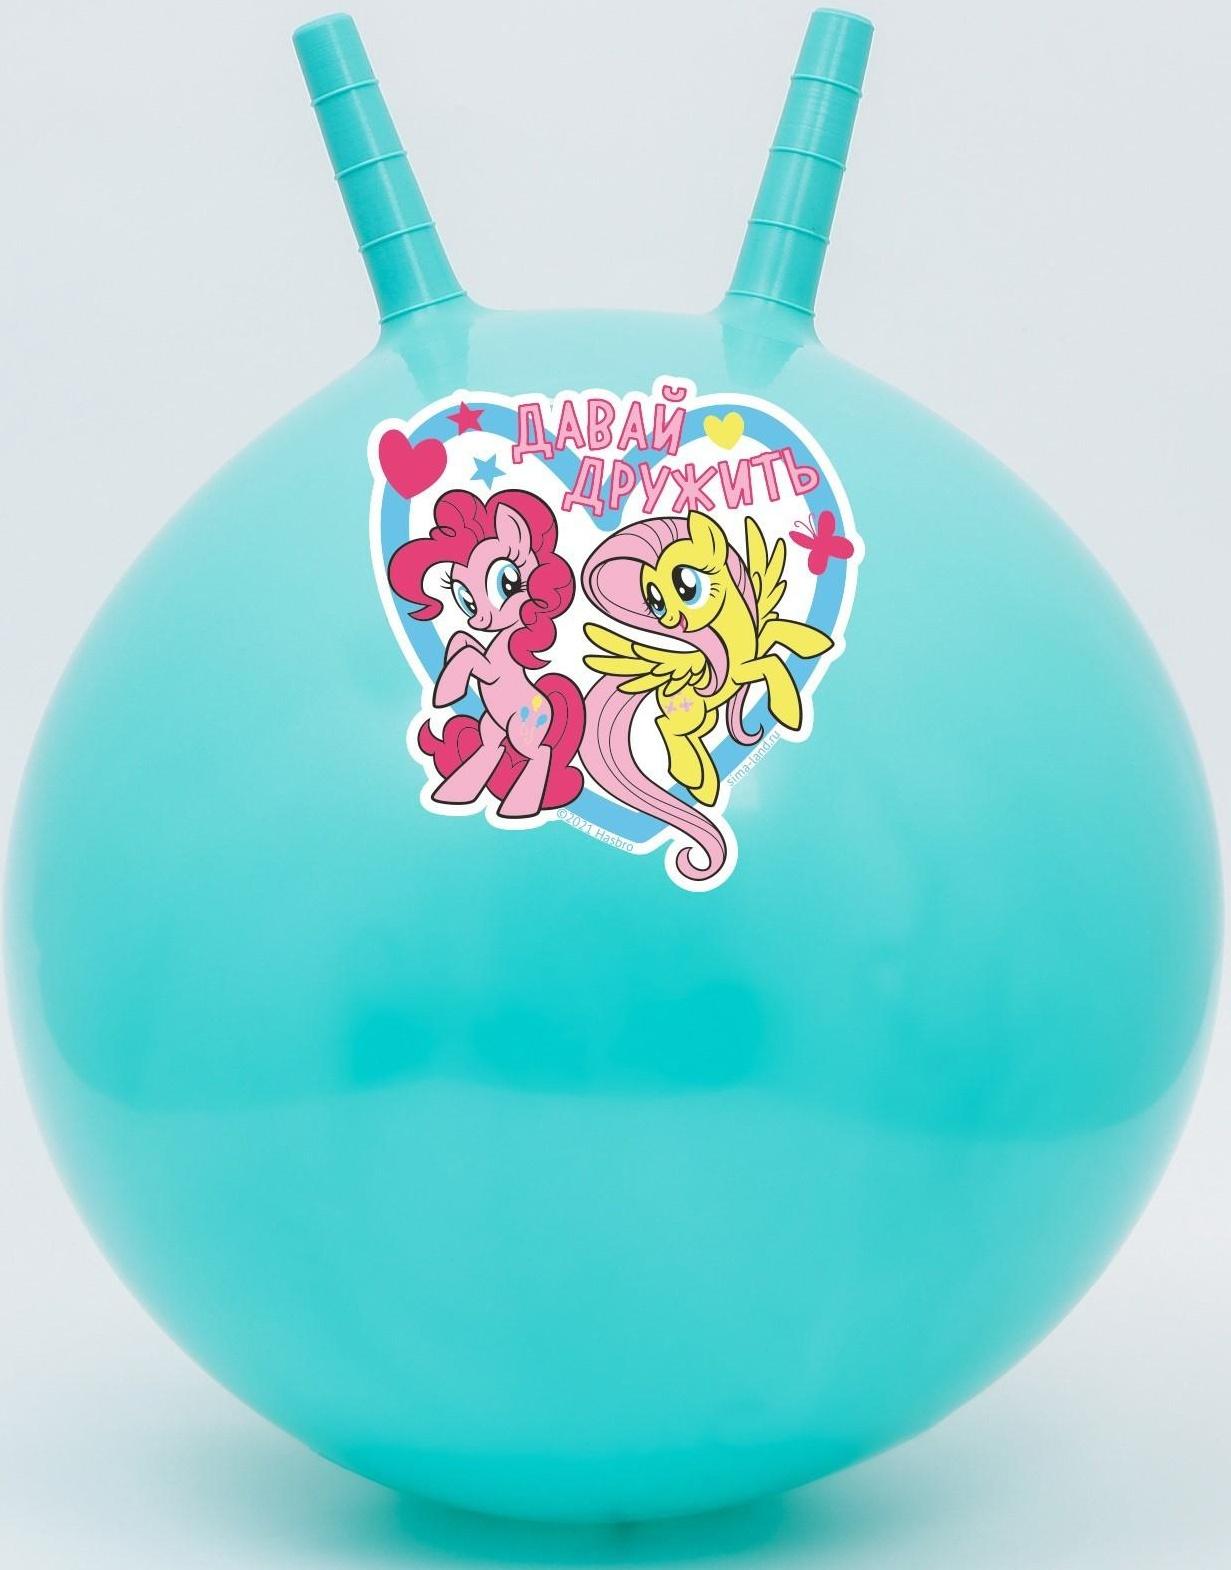 Мяч прыгун с рожками «Давай дружить», d=45 см, My Little Pony, вес 350 г, цвета МИКС